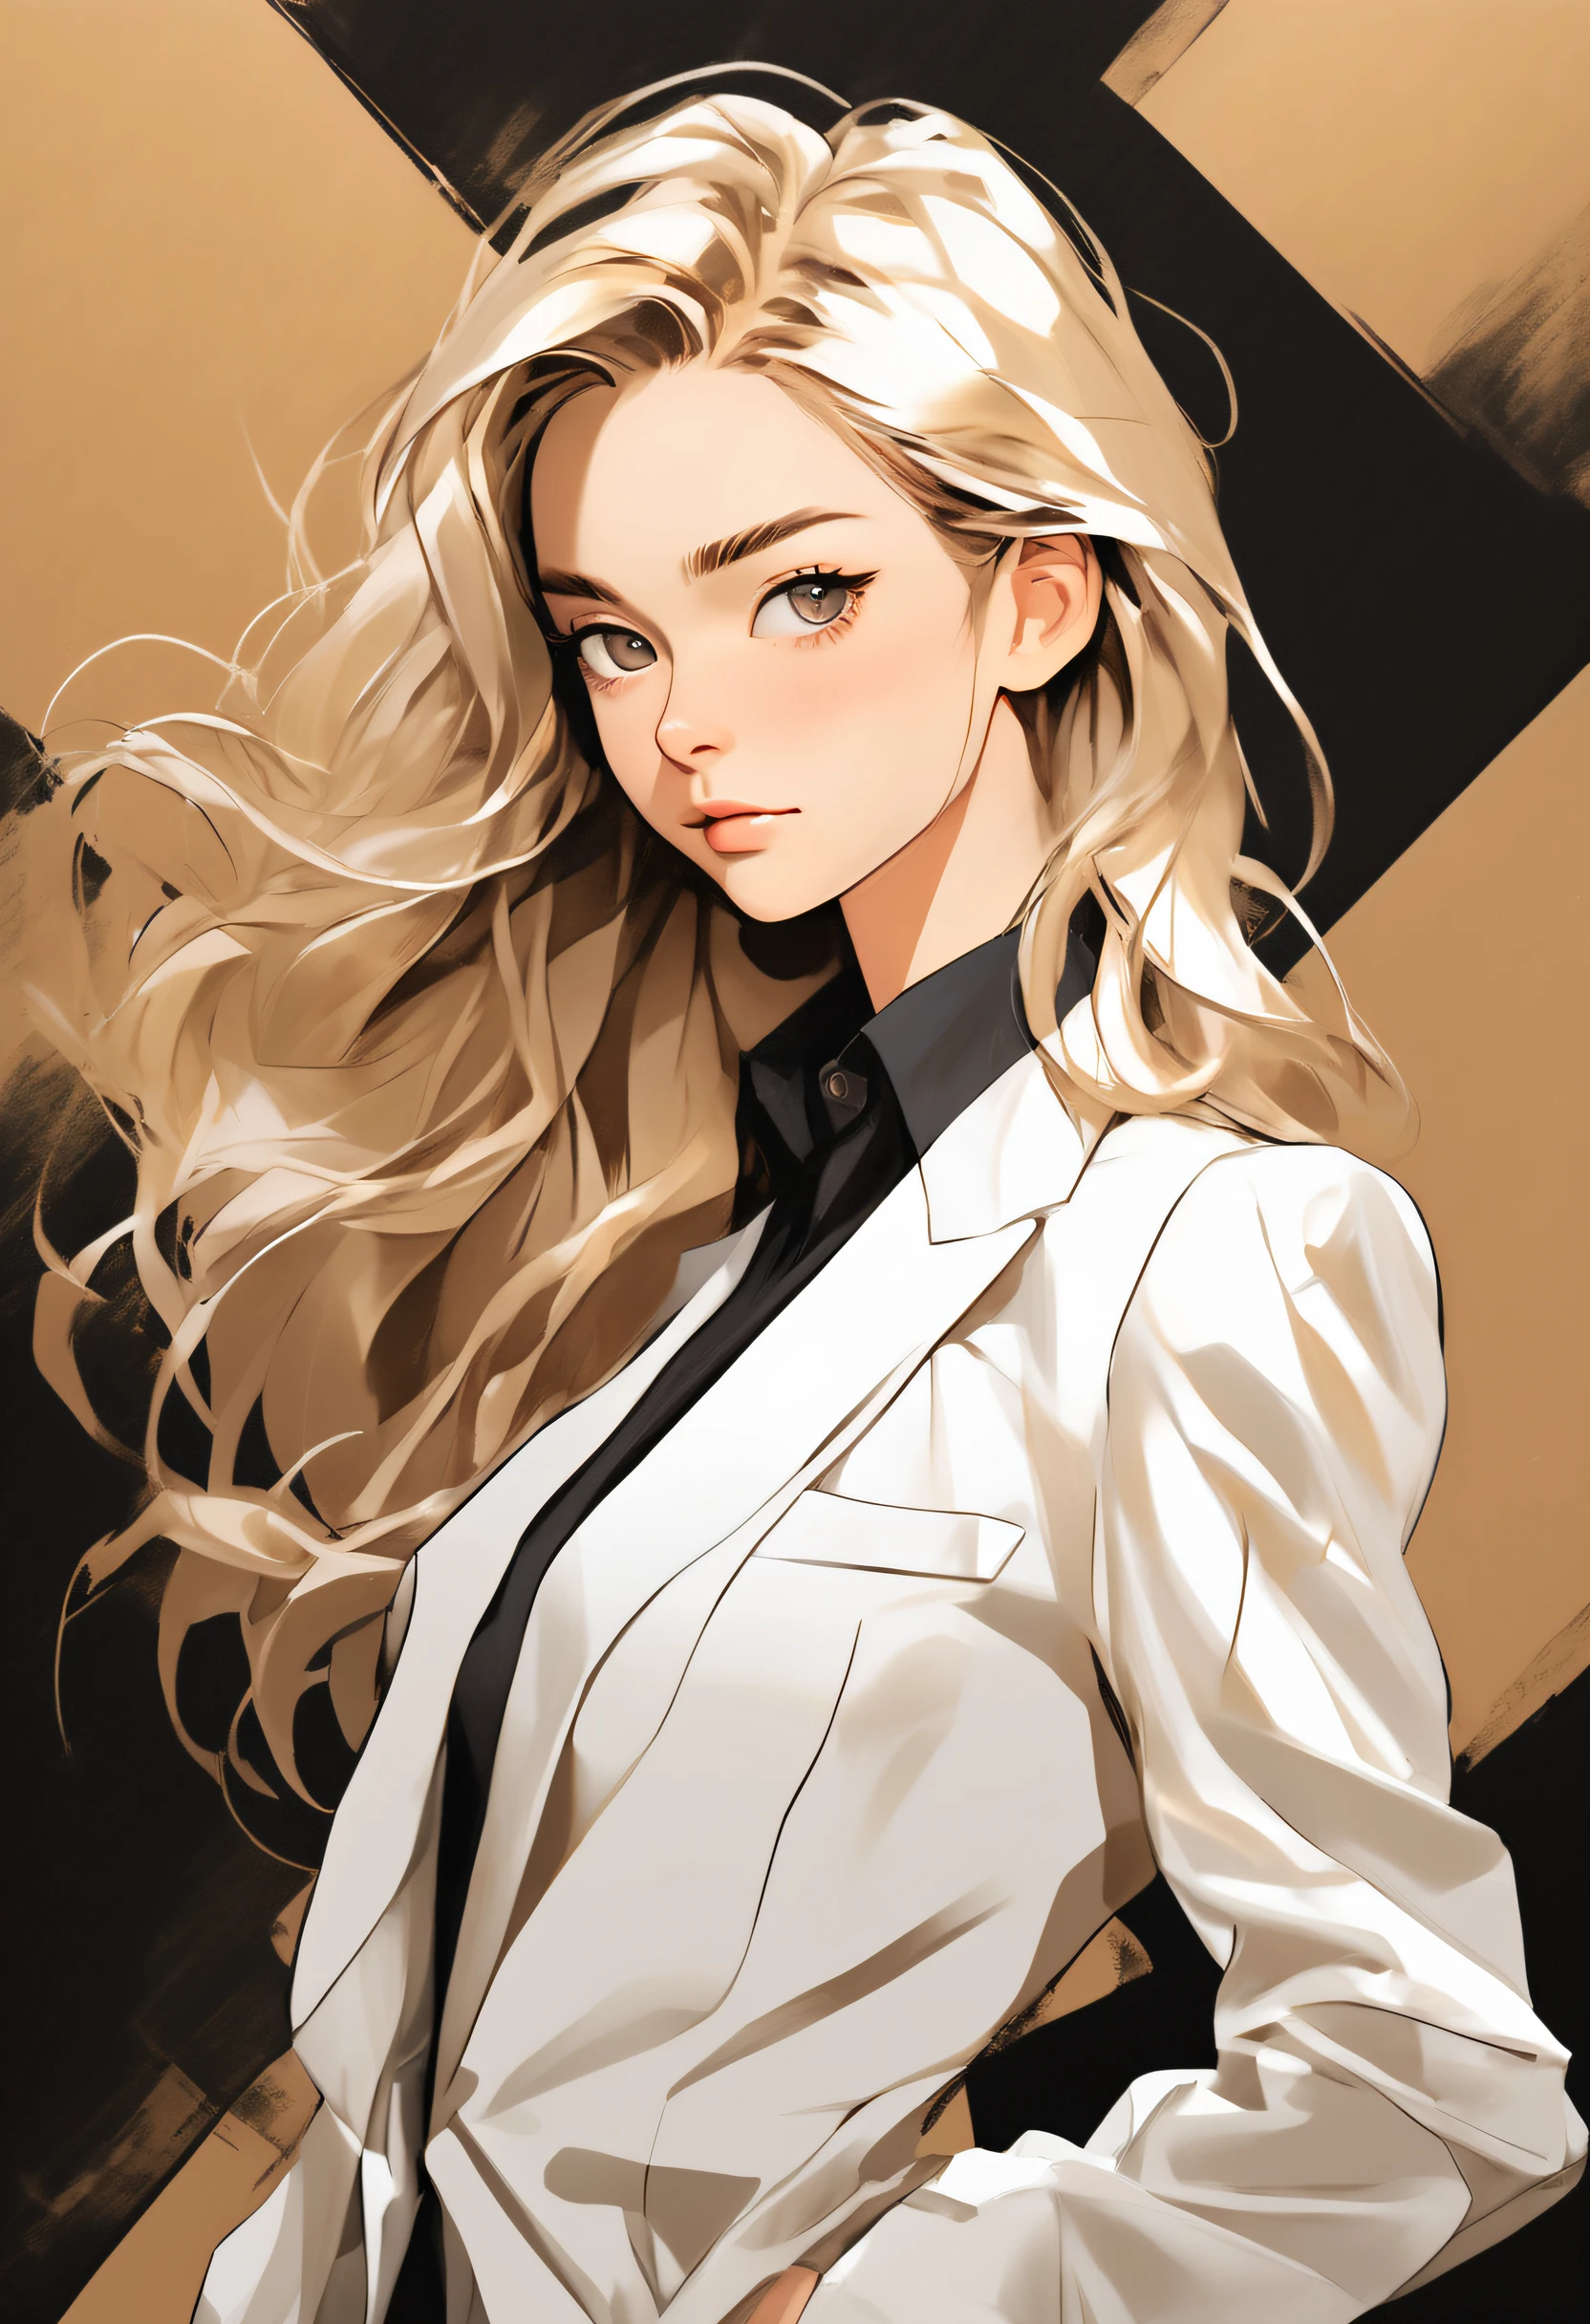 흰색 양복을 입은 애니메이션 소녀, 정면 초상화, 긴 머리, 전문 여성, V넥 셔츠 세트, 미세한 브러시 획 스타일, 만화 리얼리즘, 라이트 브론즈와 라이트 블랙 스타일로, 사무실 배경, 다채로운 만화 스타일